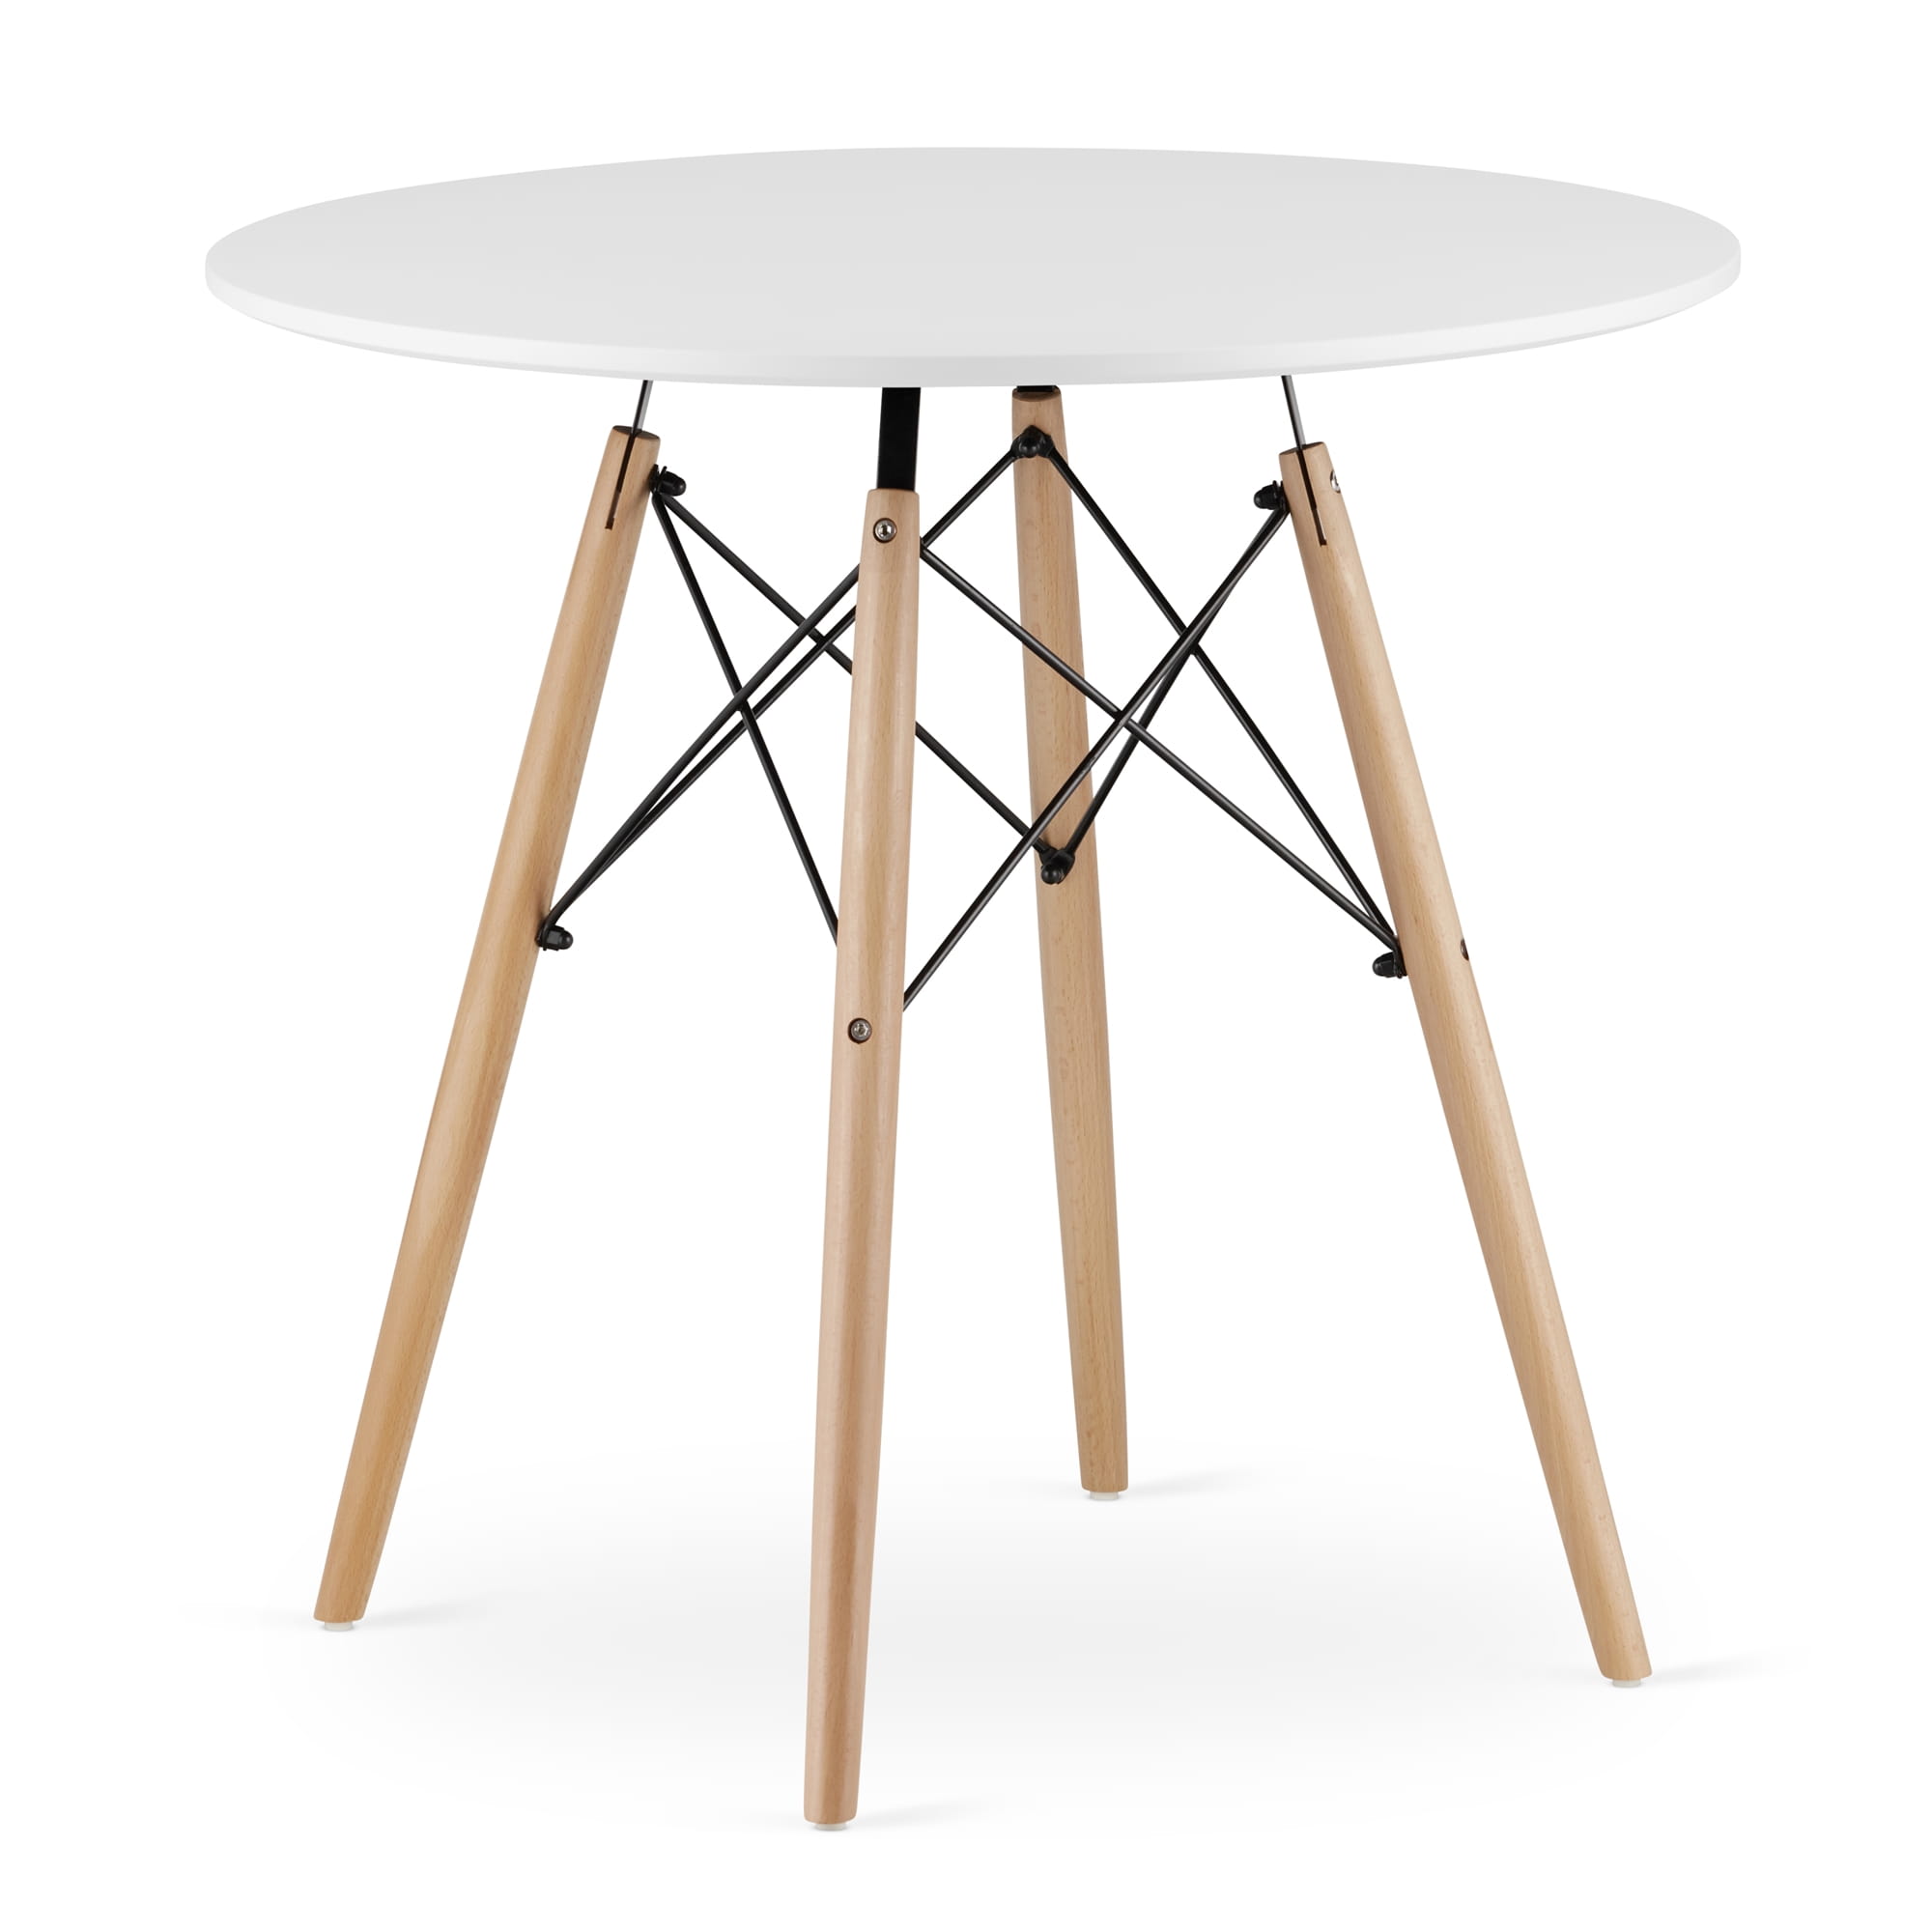 Stůl TODI okrouhlý 80cm - bílý